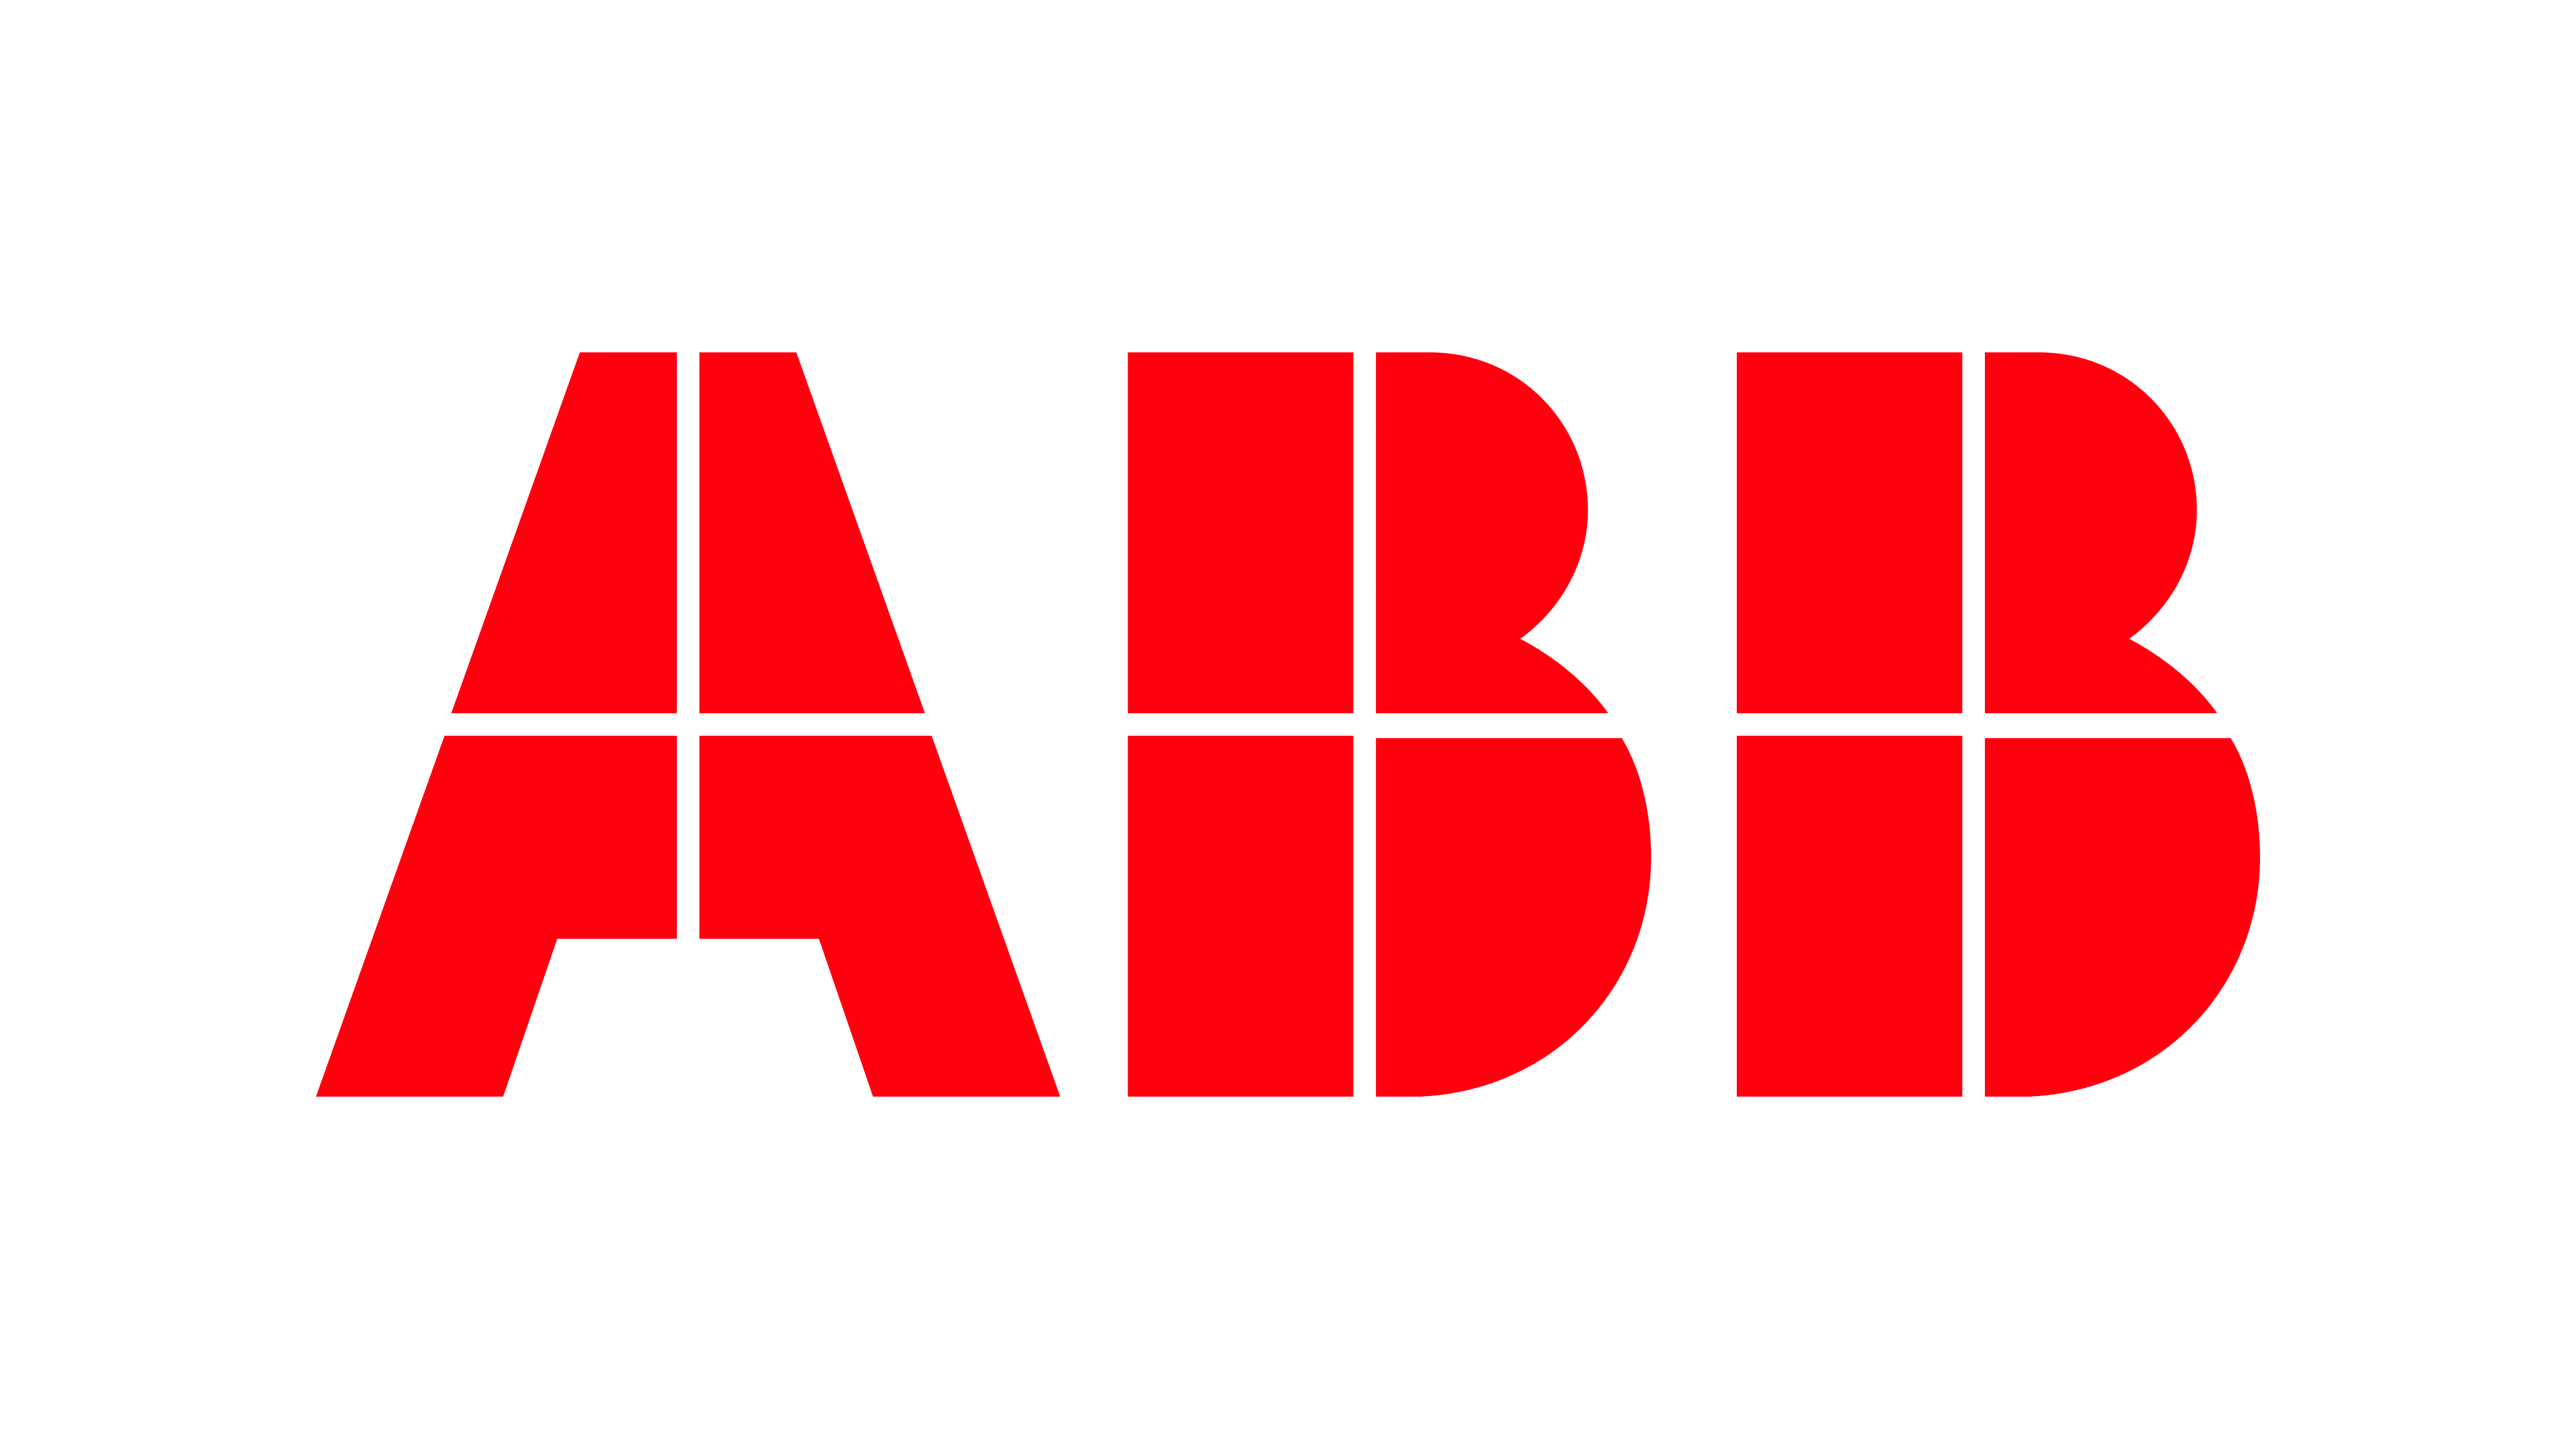 ABB-logo